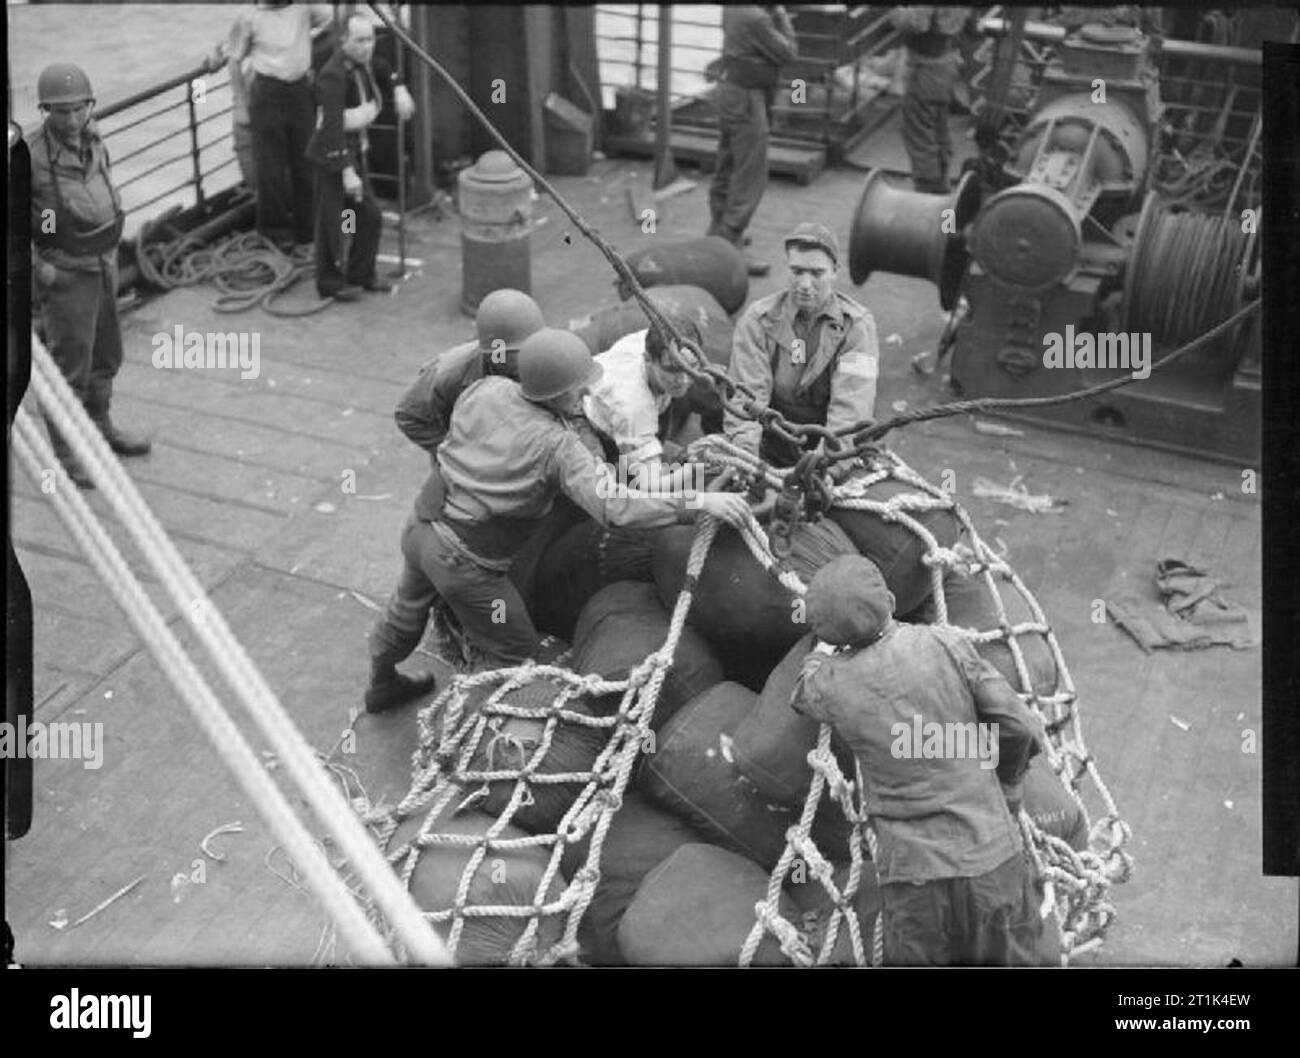 Die Royal Navy während des Zweiten Weltkriegs - Operation Torch, Nordafrika, November 1942 amerikanische Truppen Vorbereiten von Materialien für Ufer zu entladen. Stockfoto